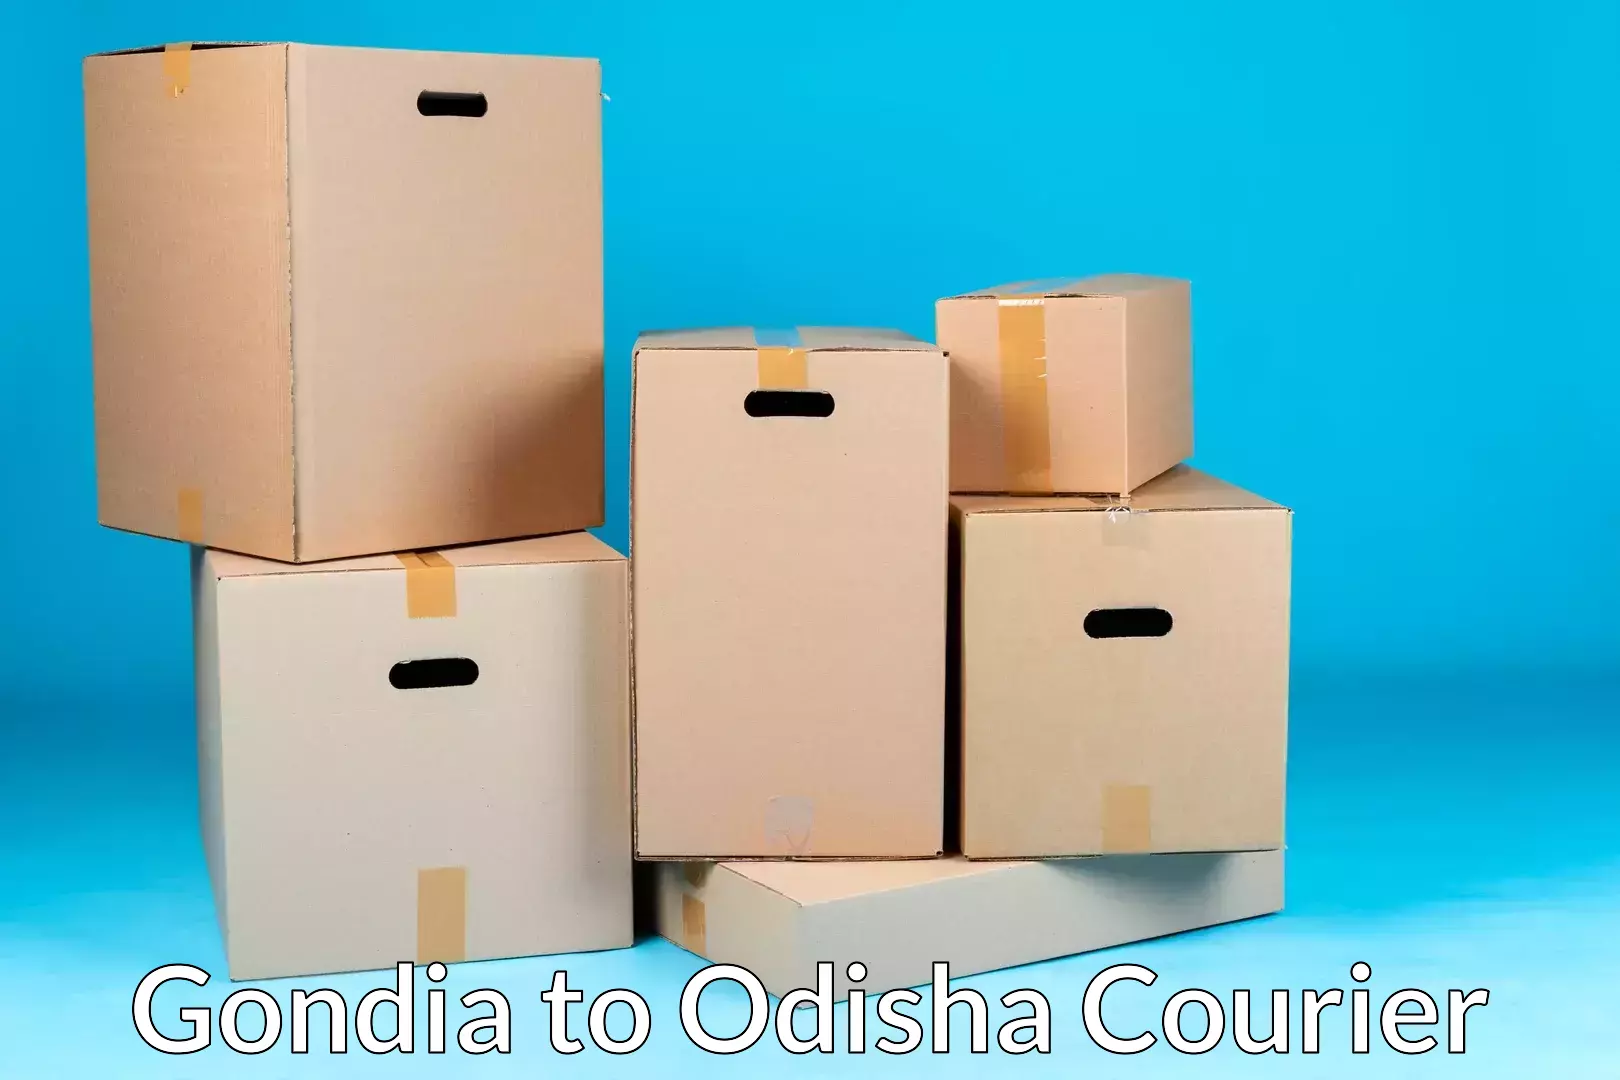 Full-service household moving Gondia to Raighar